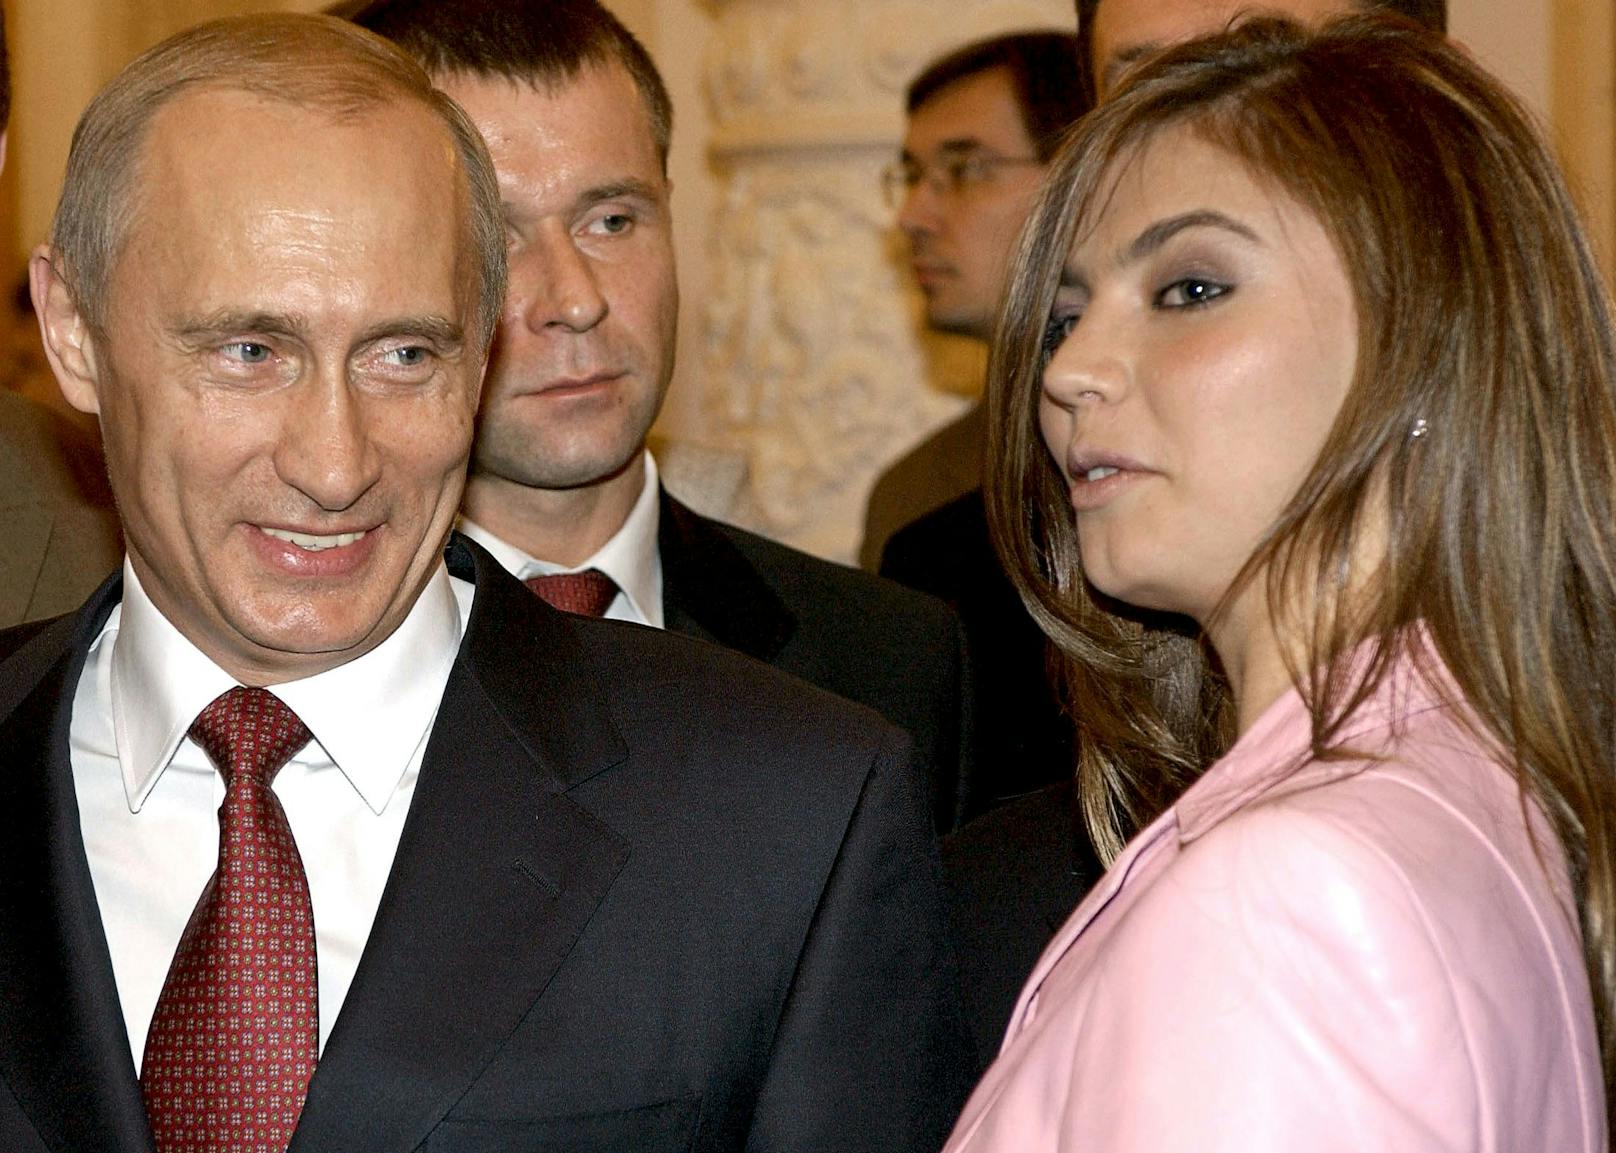 Die frühere Sportlerin Alina Kabaeva (Kabajewa) fiel Wladimir Putin bereits vor vielen Jahren ins Auge. Hier beim Kreml-Besuch des Olympia-Teams 2004.